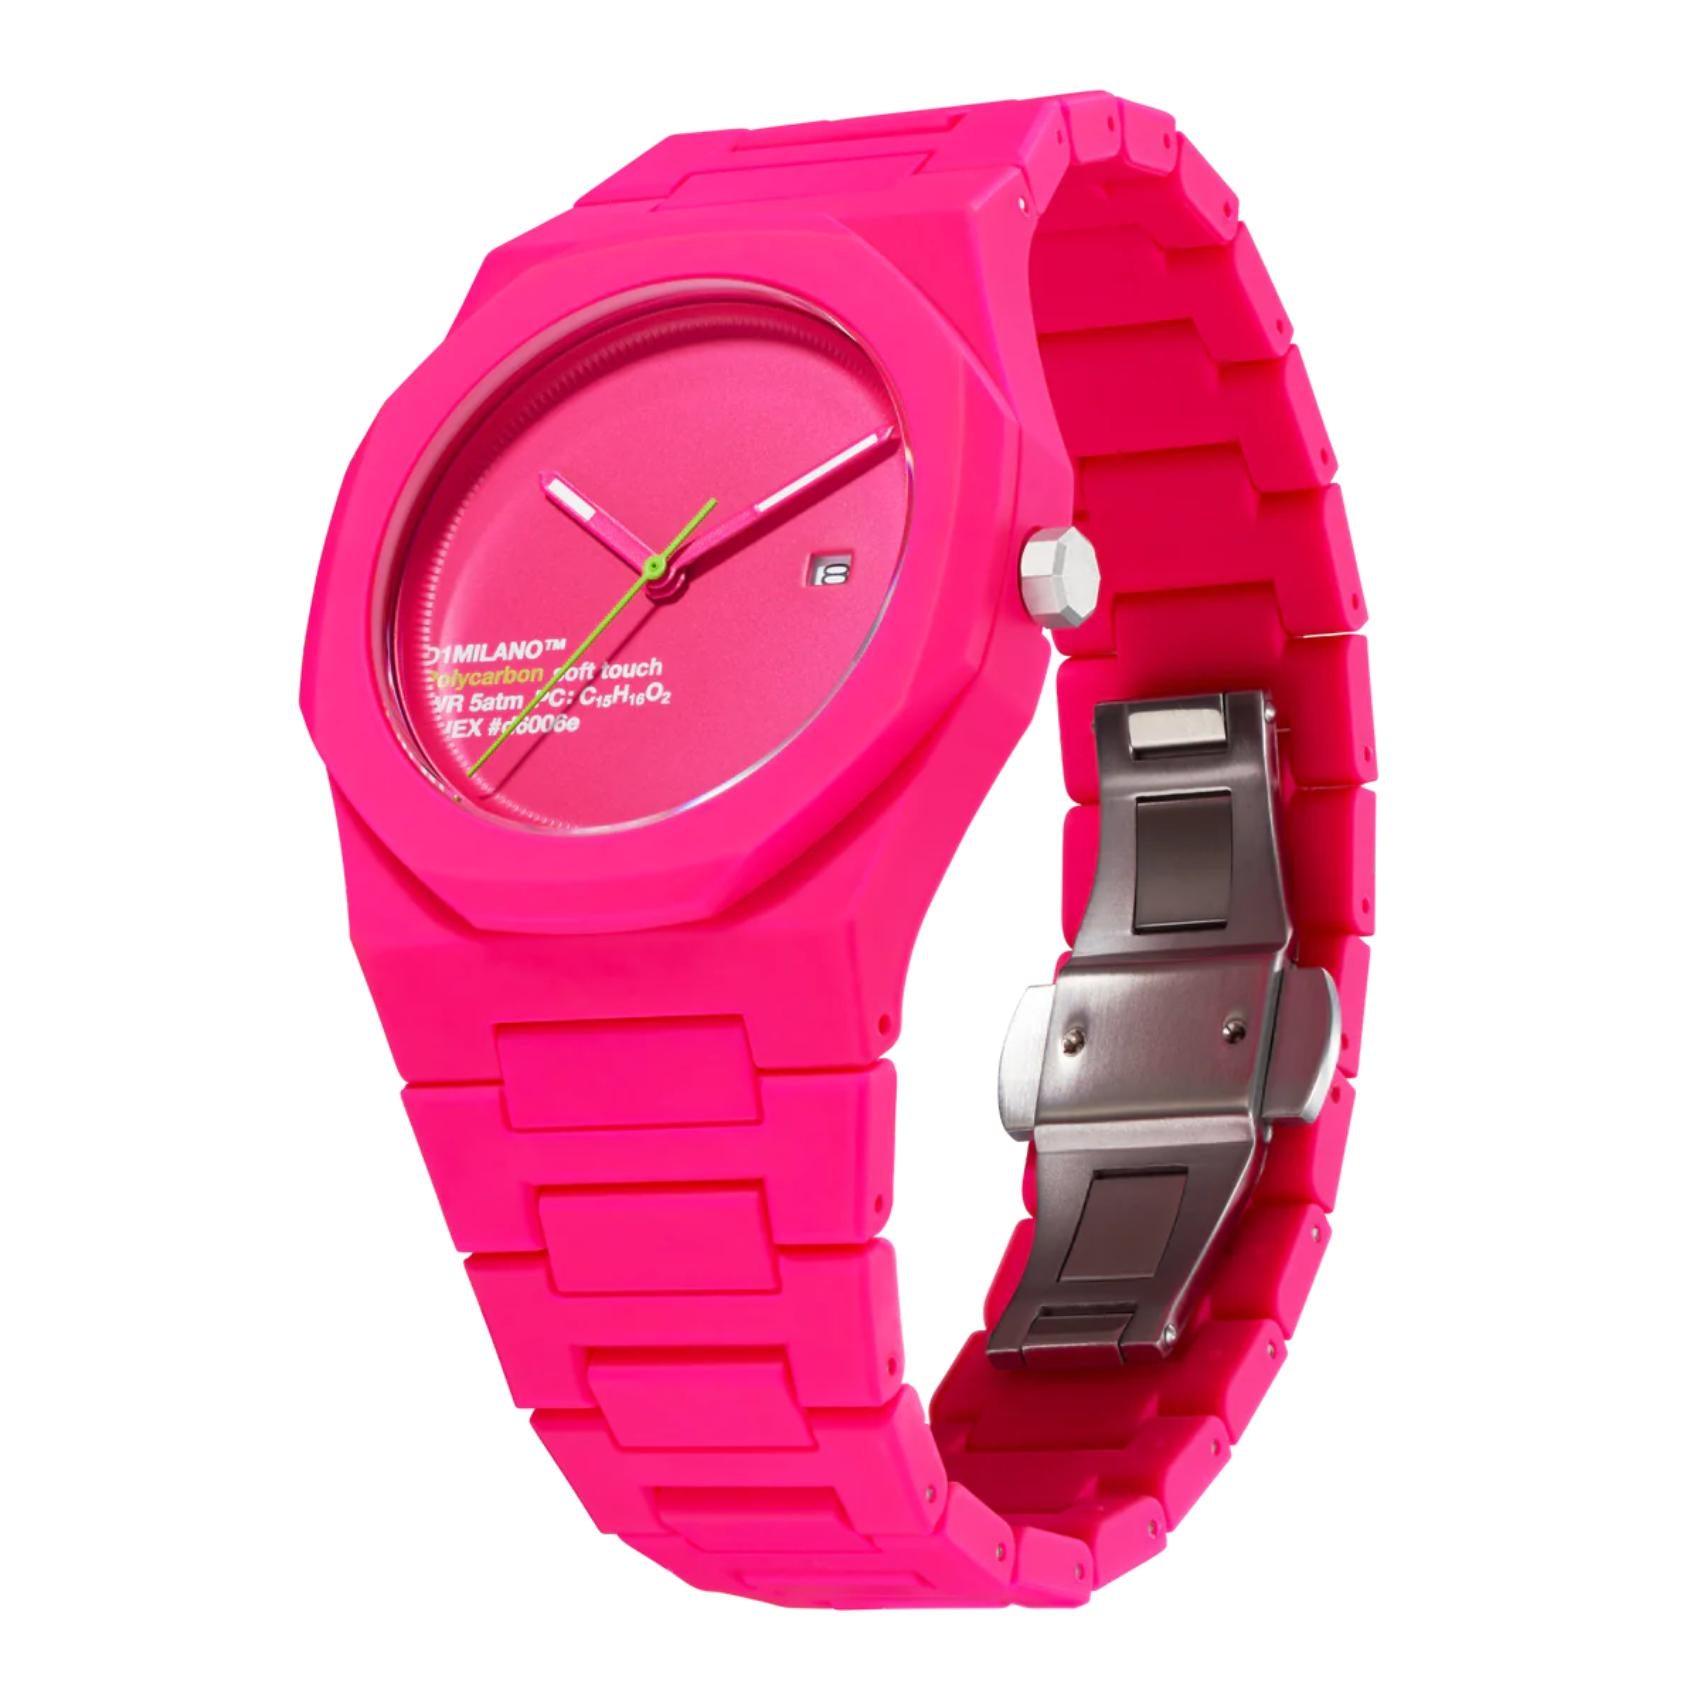 Ρολόι D1 Milano Hot Pink D1-PCBJ32 με ροζ ατσάλινο μπρασελέ και ροζ καντράν 40.5mm με οκτάγωνο σχήμα.